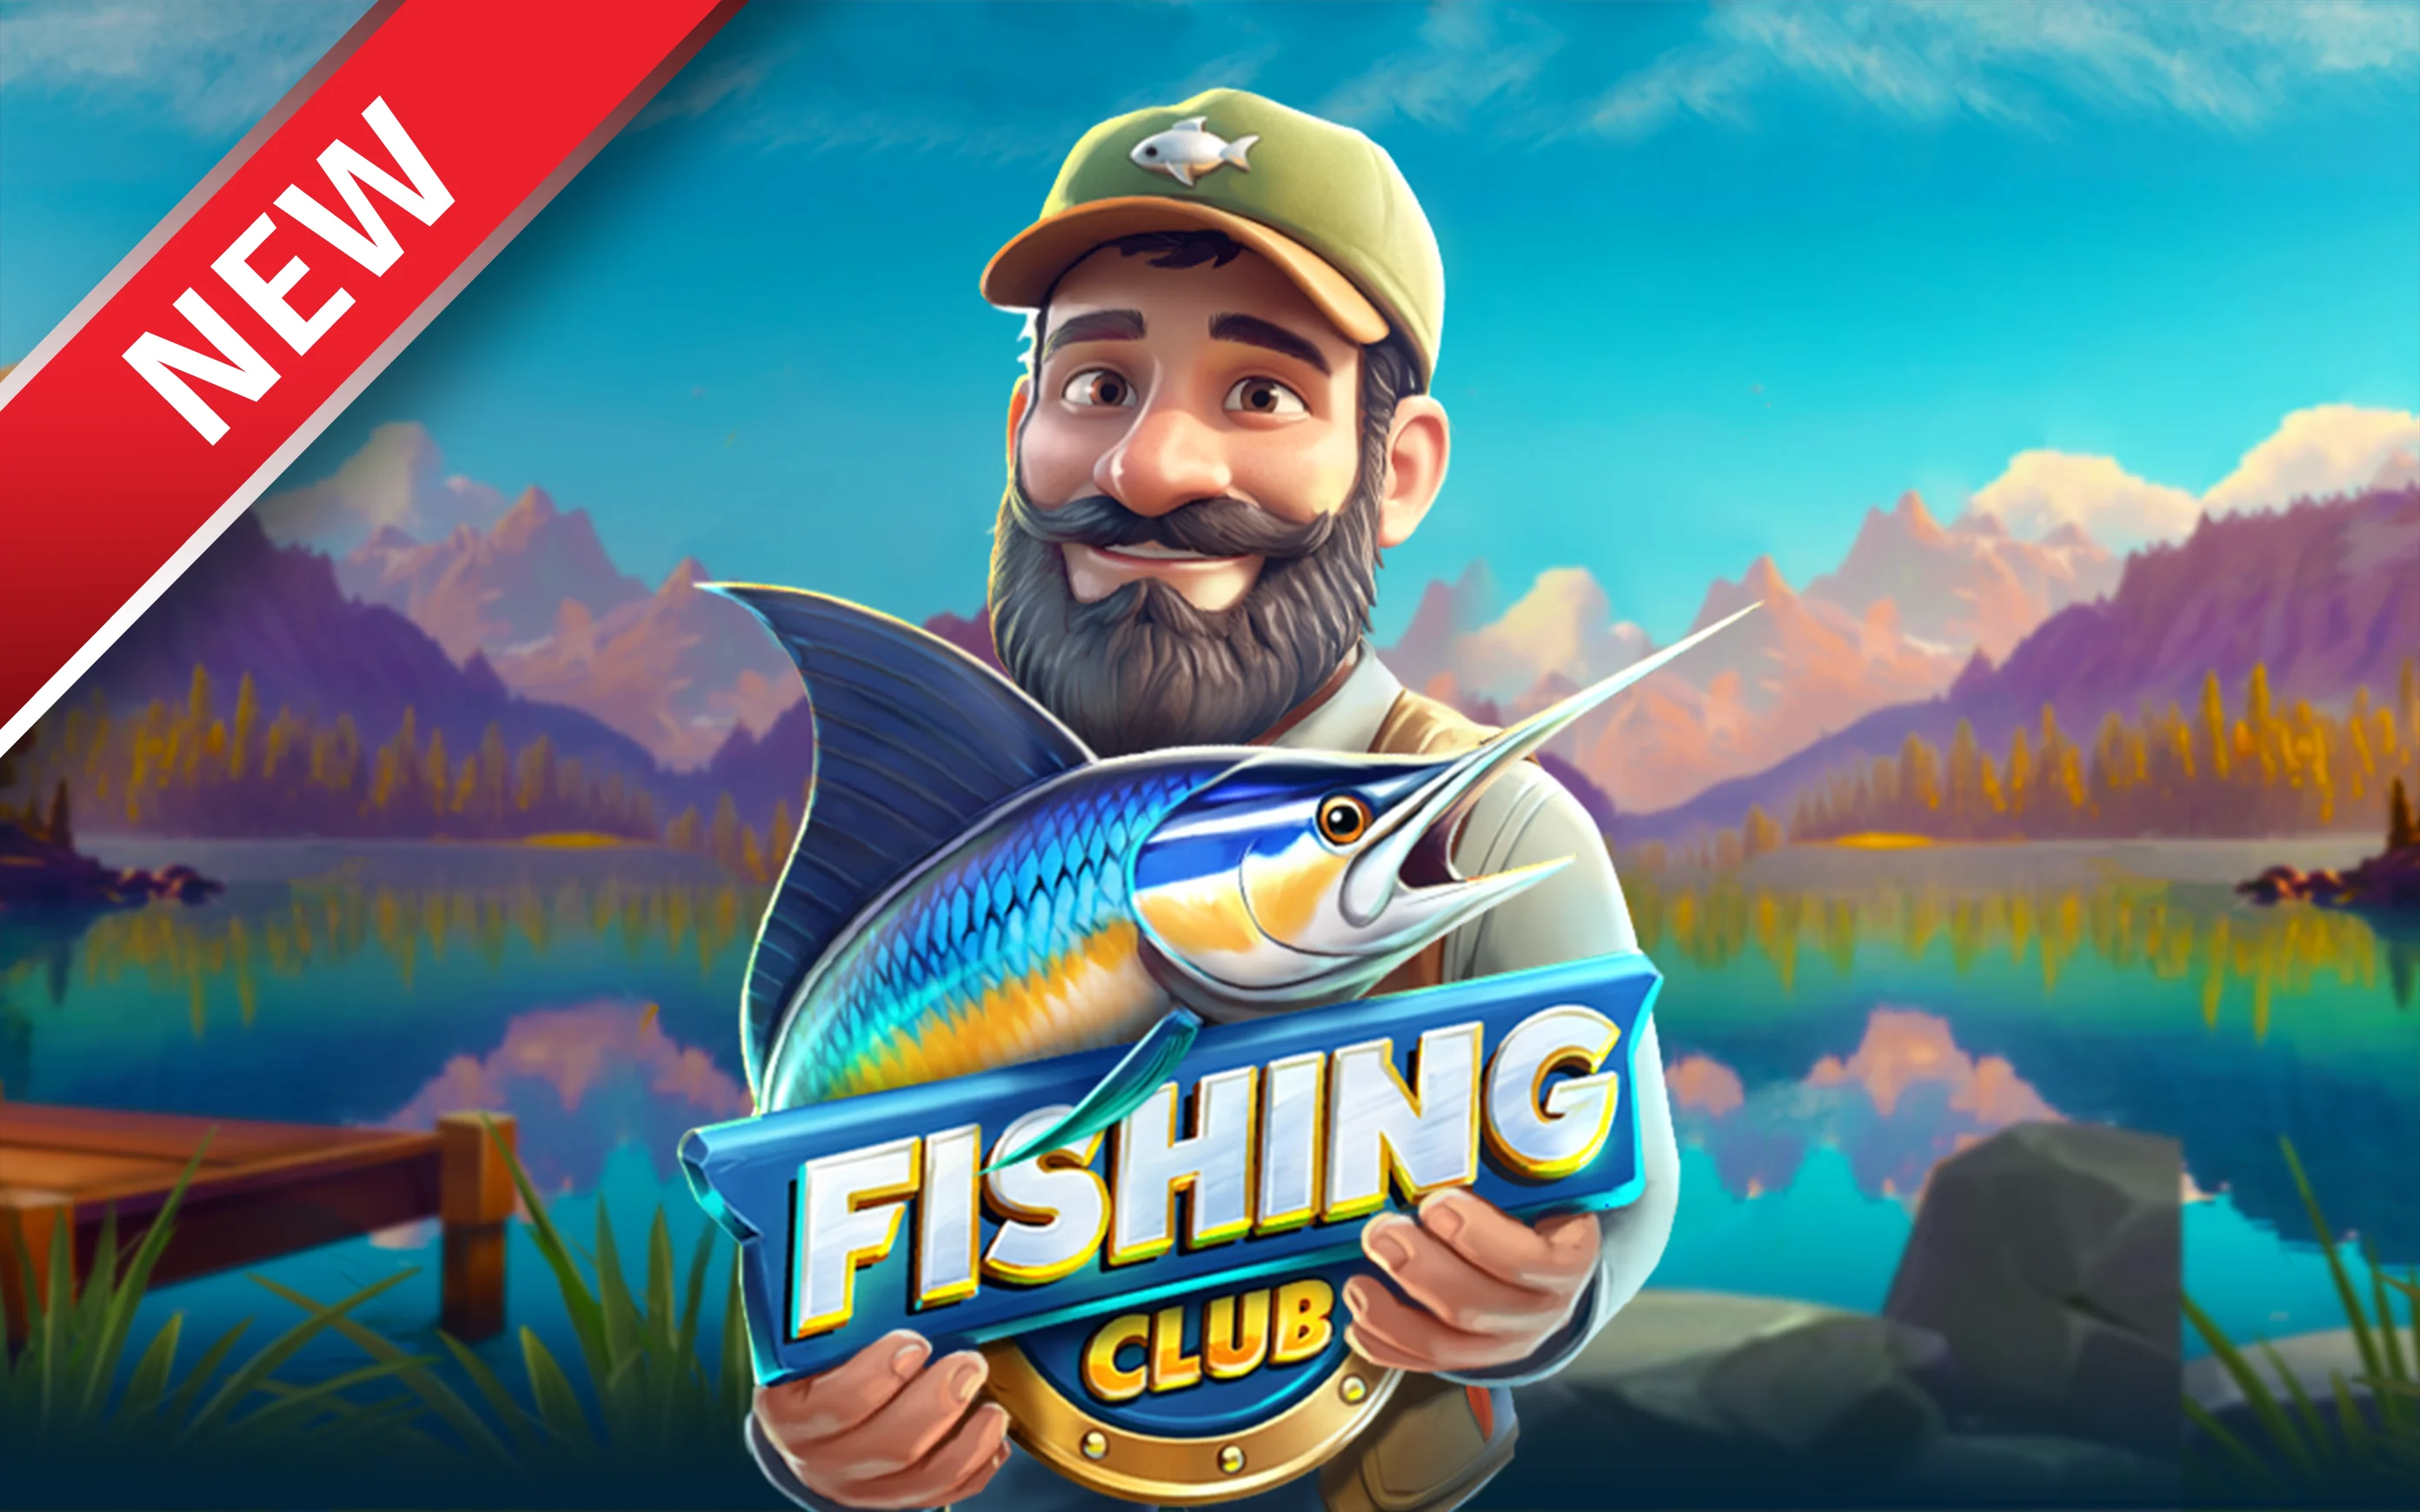 Play Fishing Club on Starcasino.be online casino